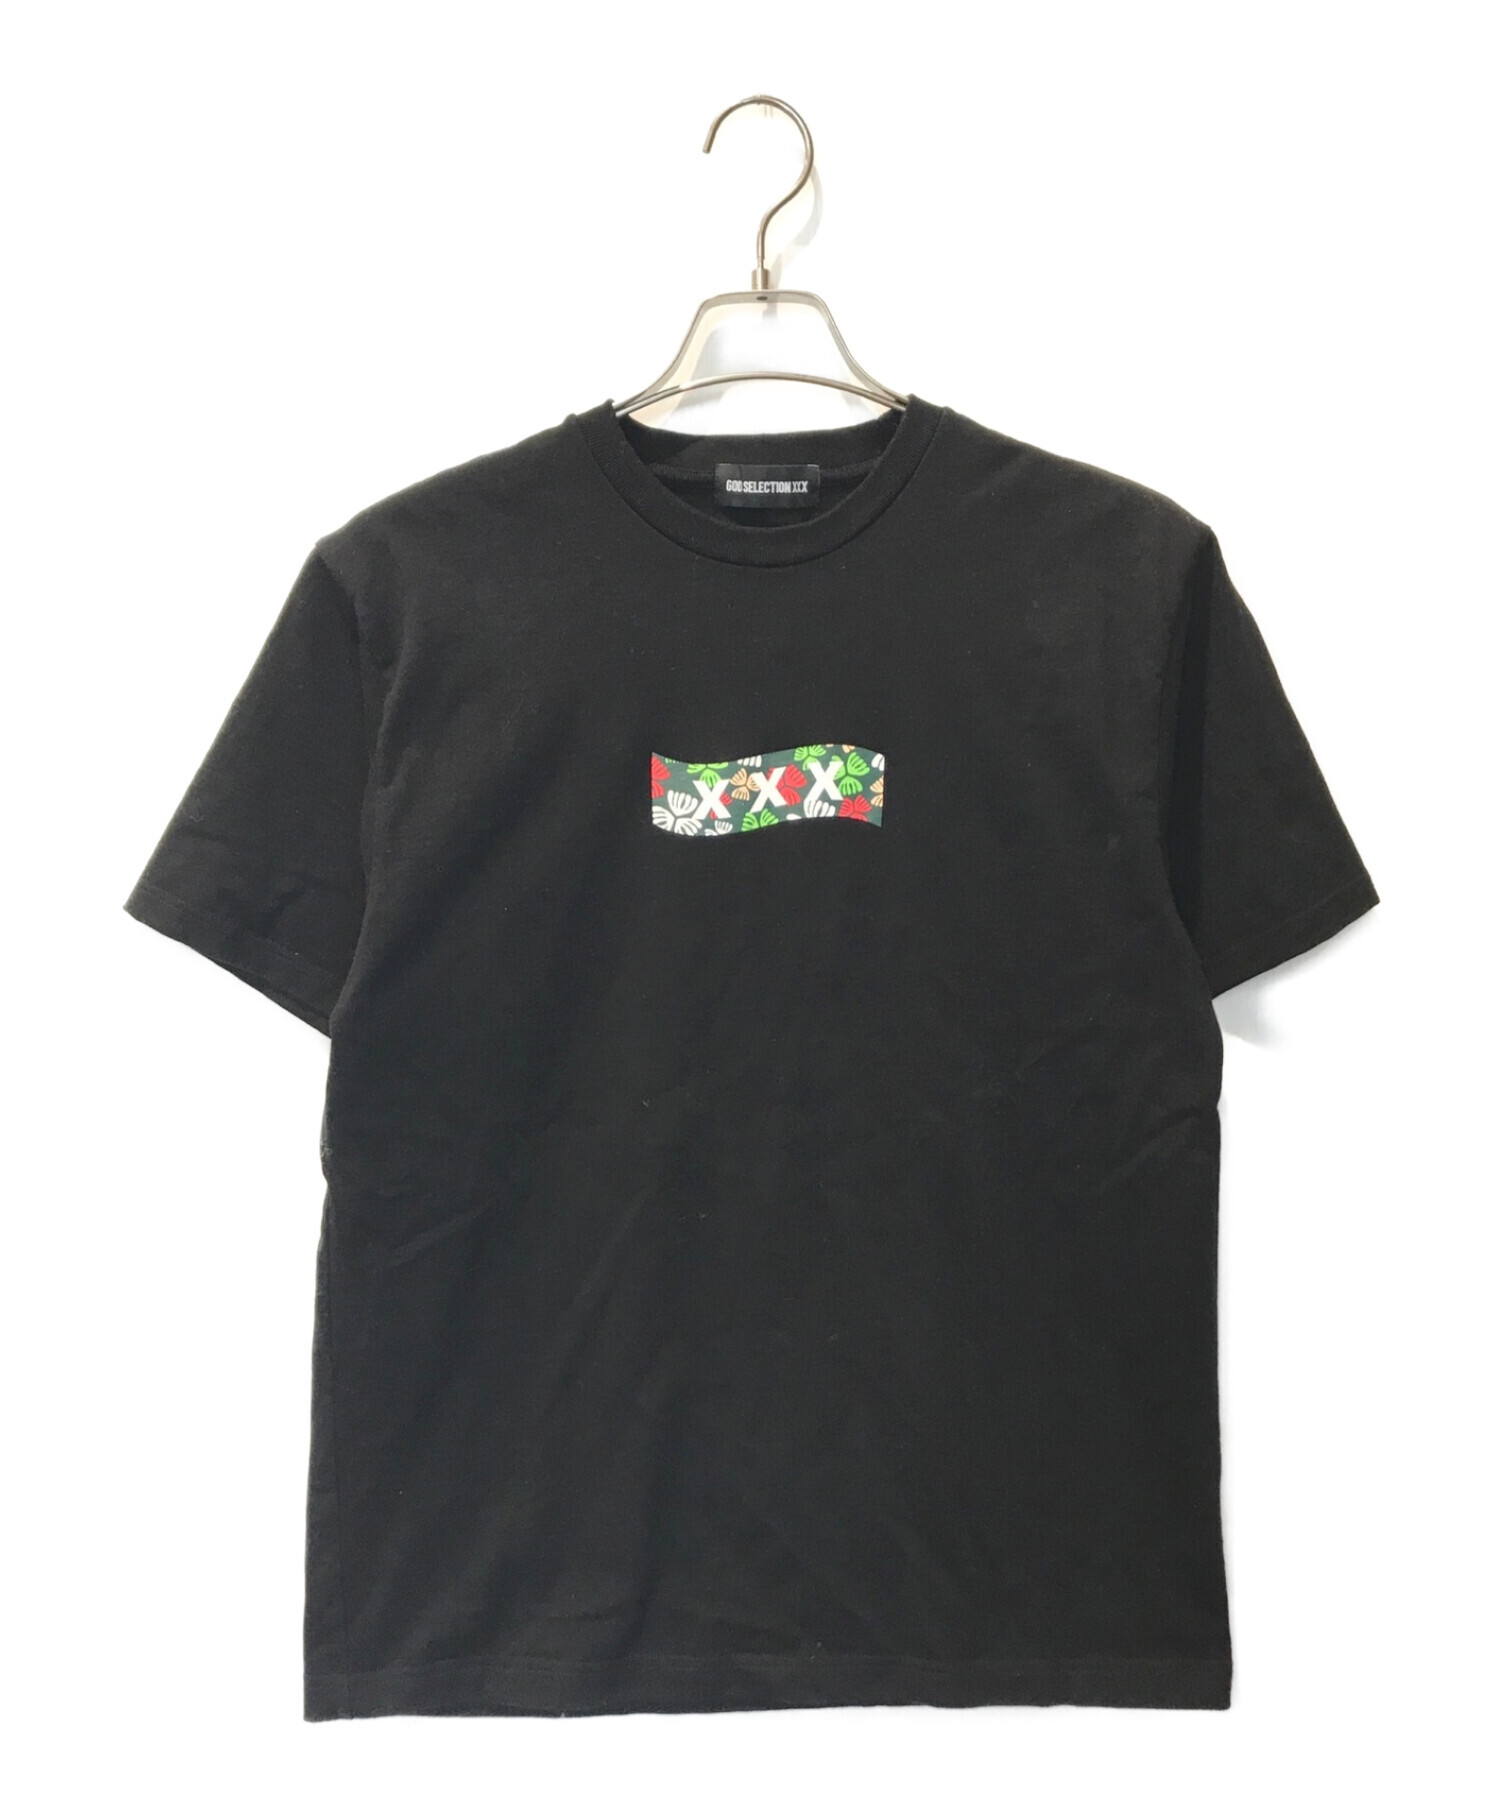 新品 GOD SELECTION XXX Tシャツ Sサイズ ブラック 黒ありビニール